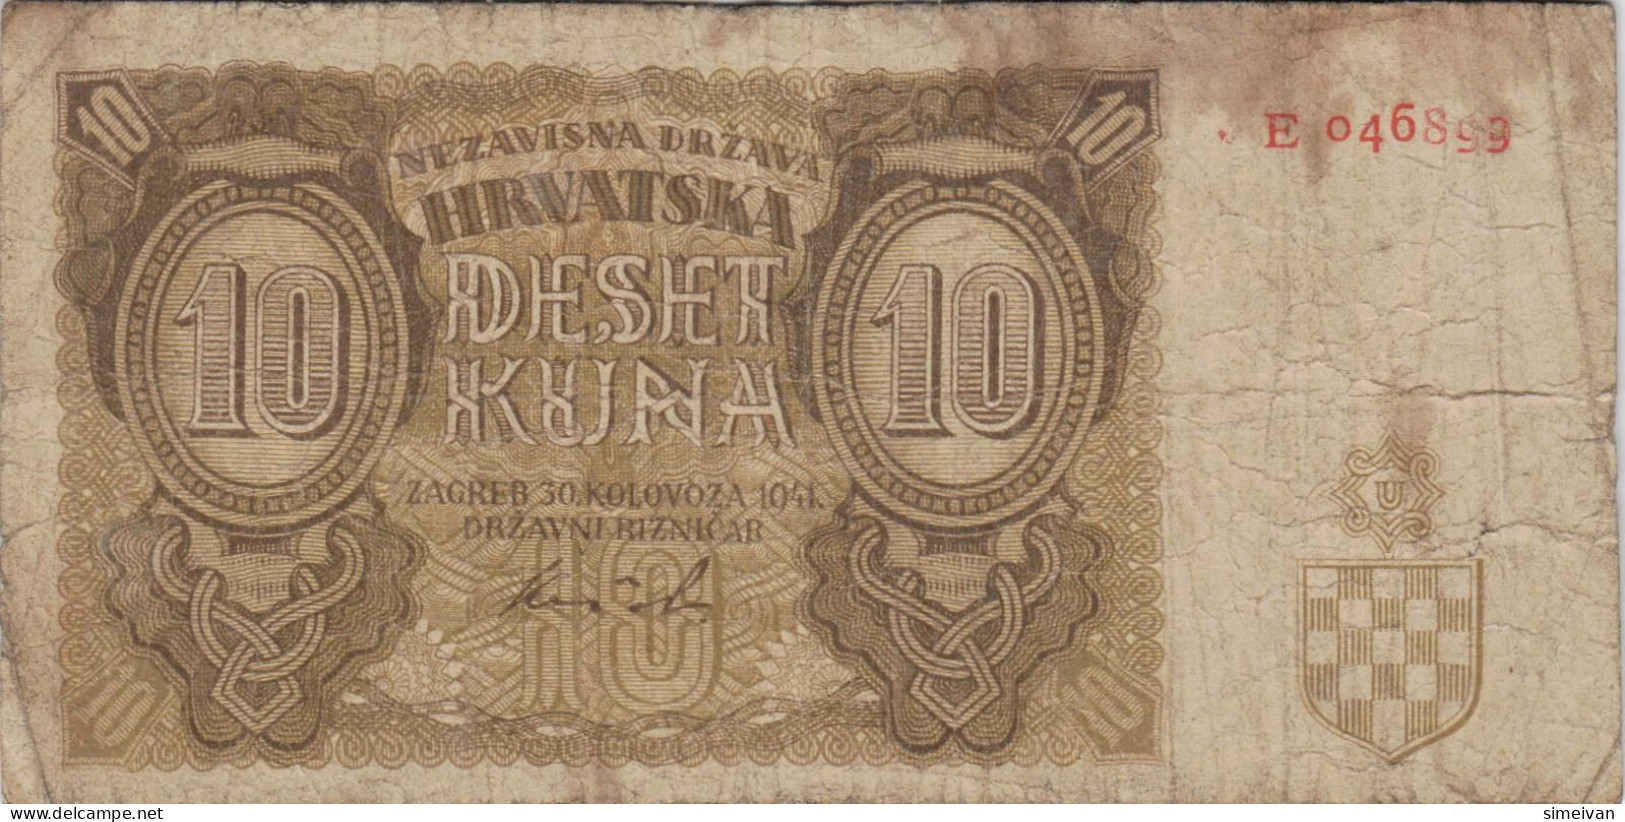 Croatia 10 Kuna 1941 P-5a Banknote Europe Currency Croatie Kroatien #5323 - Kroatien